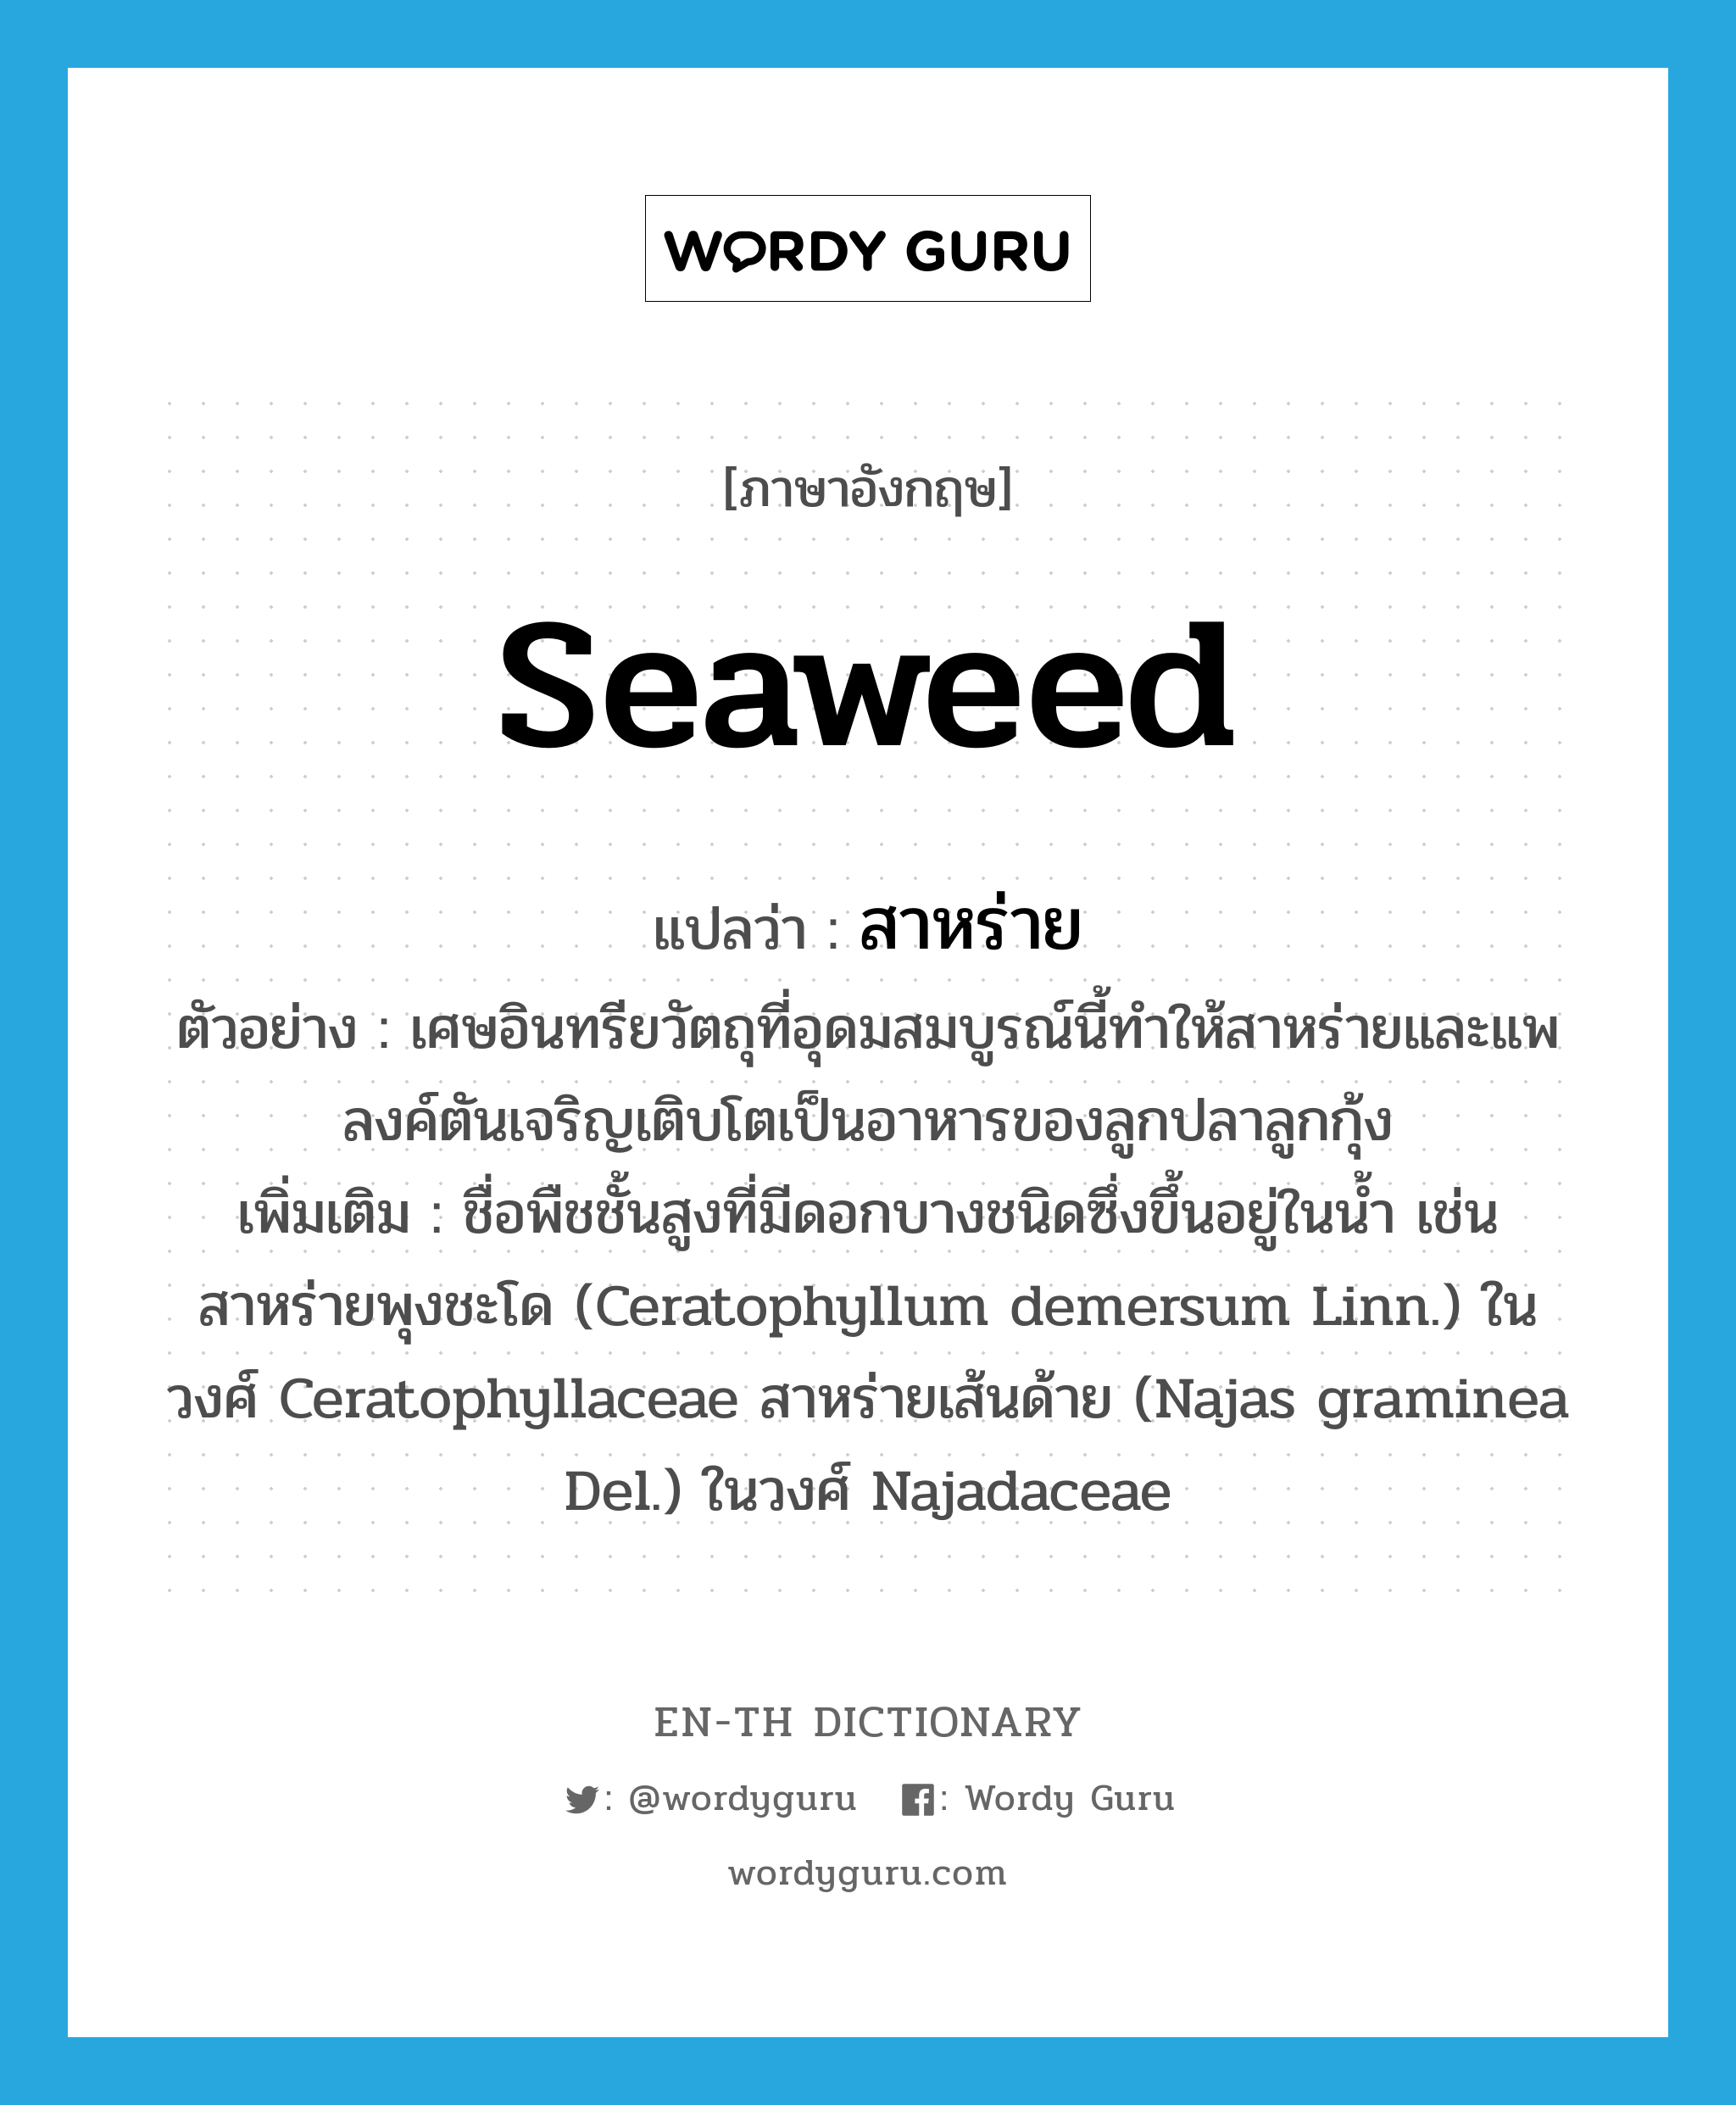 seaweed แปลว่า?, คำศัพท์ภาษาอังกฤษ seaweed แปลว่า สาหร่าย ประเภท N ตัวอย่าง เศษอินทรียวัตถุที่อุดมสมบูรณ์นี้ทำให้สาหร่ายและแพลงค์ตันเจริญเติบโตเป็นอาหารของลูกปลาลูกกุ้ง เพิ่มเติม ชื่อพืชชั้นสูงที่มีดอกบางชนิดซึ่งขึ้นอยู่ในน้ำ เช่น สาหร่ายพุงชะโด (Ceratophyllum demersum Linn.) ในวงศ์ Ceratophyllaceae สาหร่ายเส้นด้าย (Najas graminea Del.) ในวงศ์ Najadaceae หมวด N